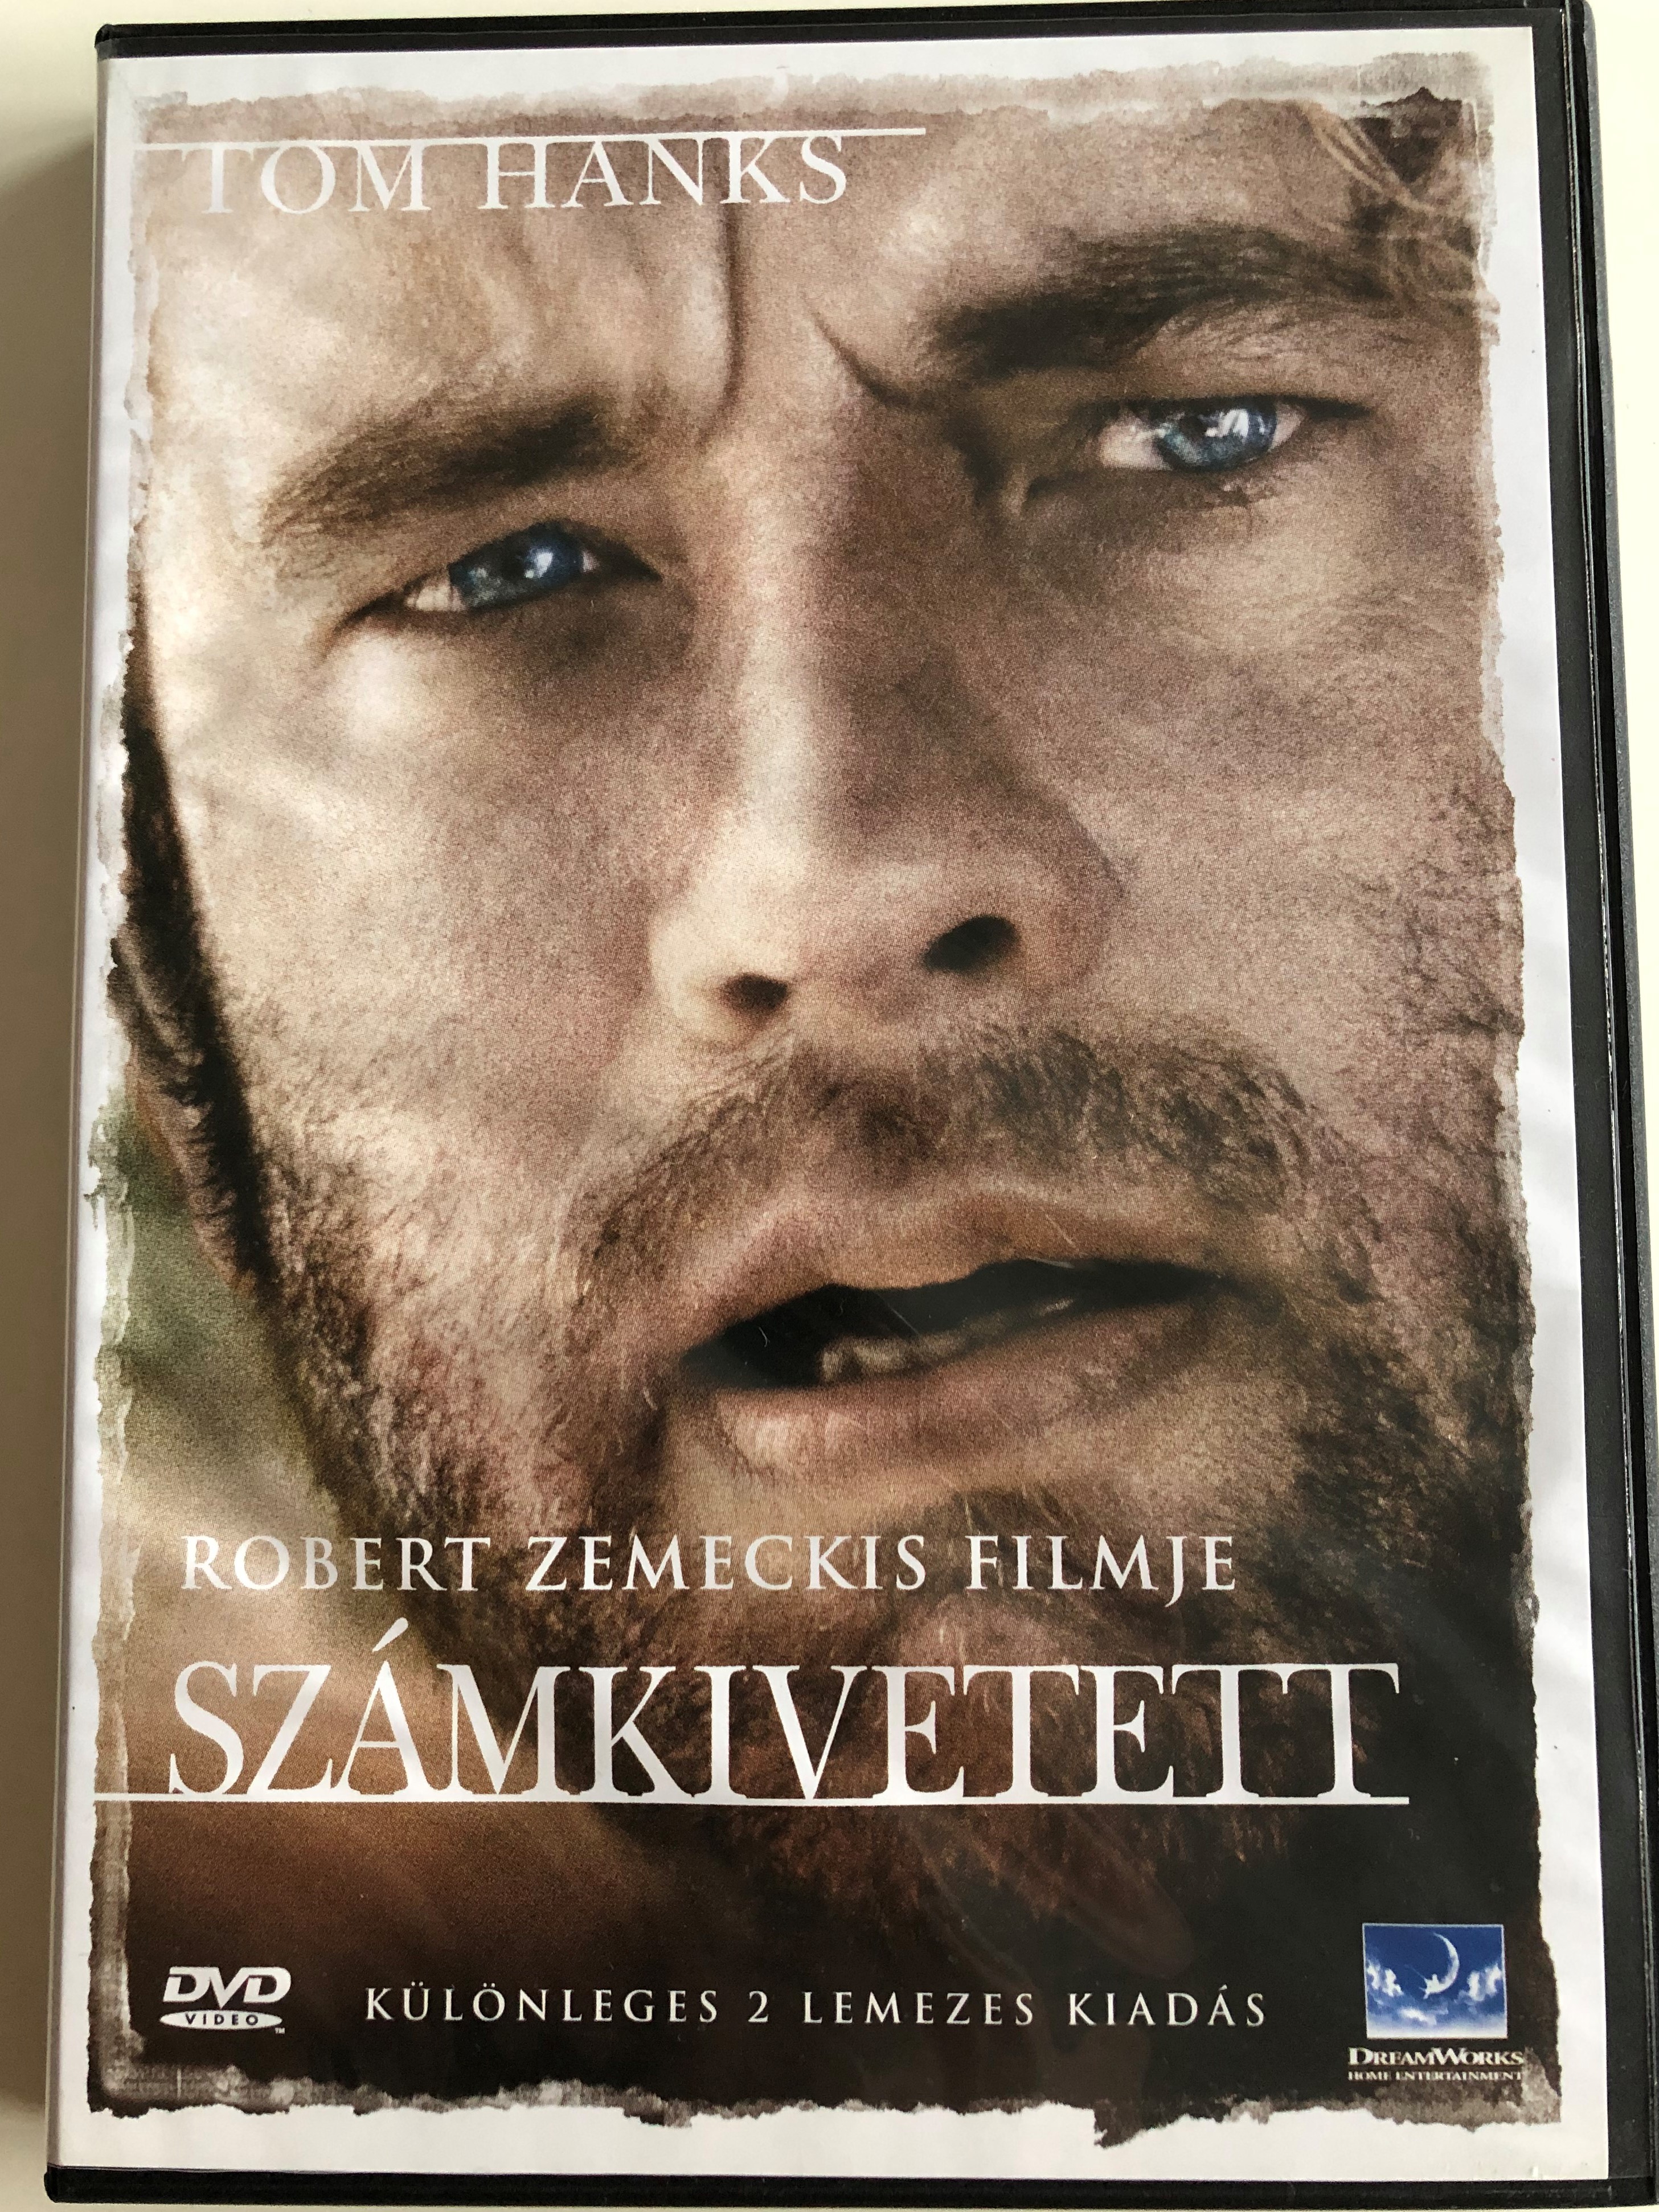 cast-away-dvd-2000-sz-mkivetett-directed-by-robert-zemeckis-01.jpg